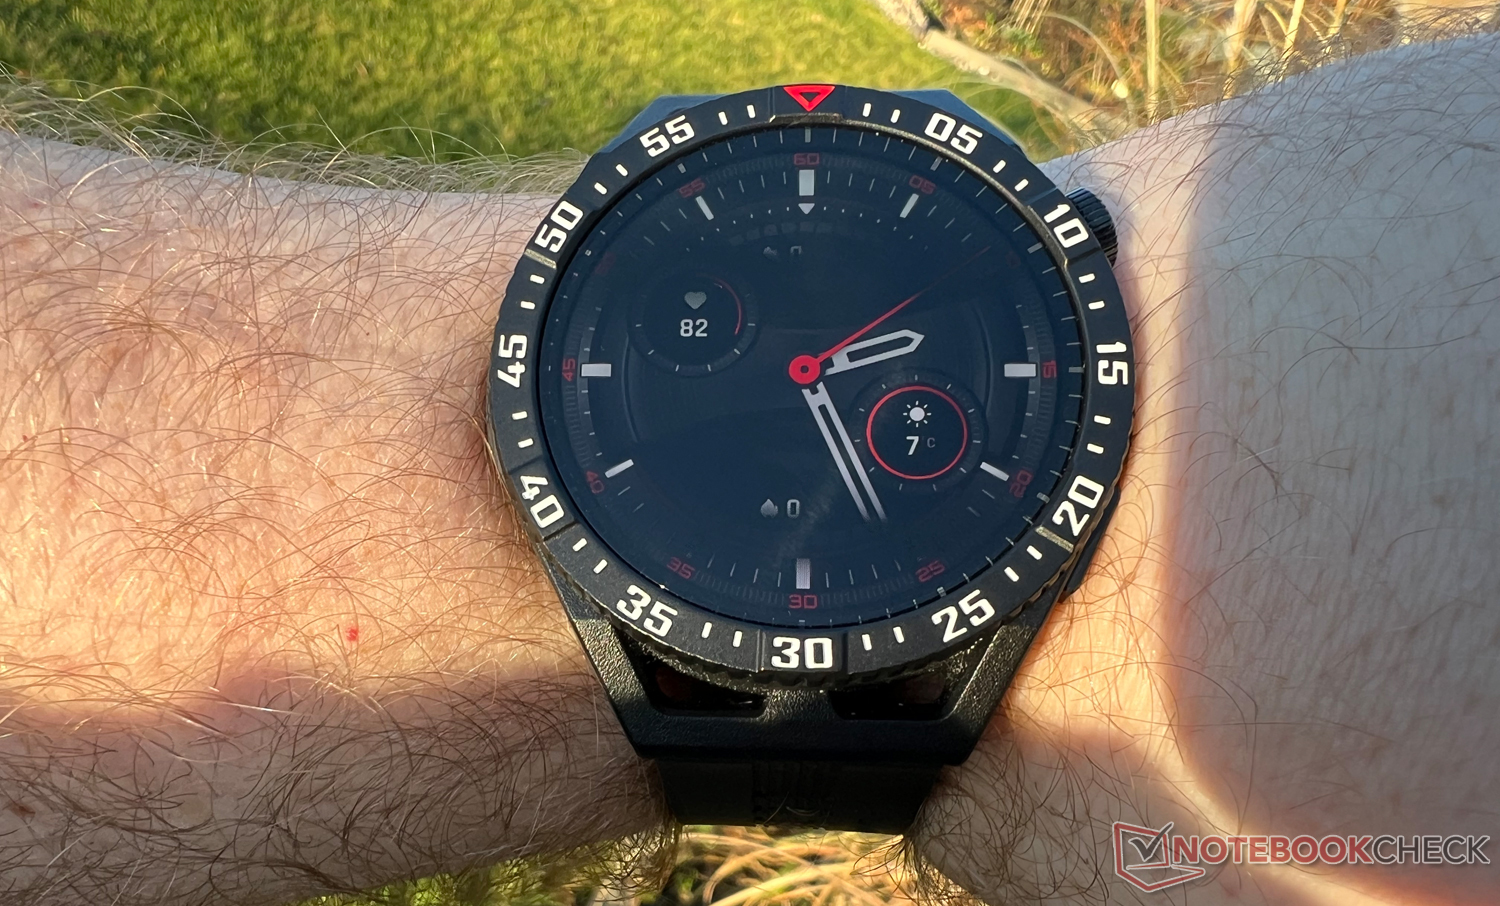 Correas de diseño compatibles con el Huawei Watch GT que son baratas